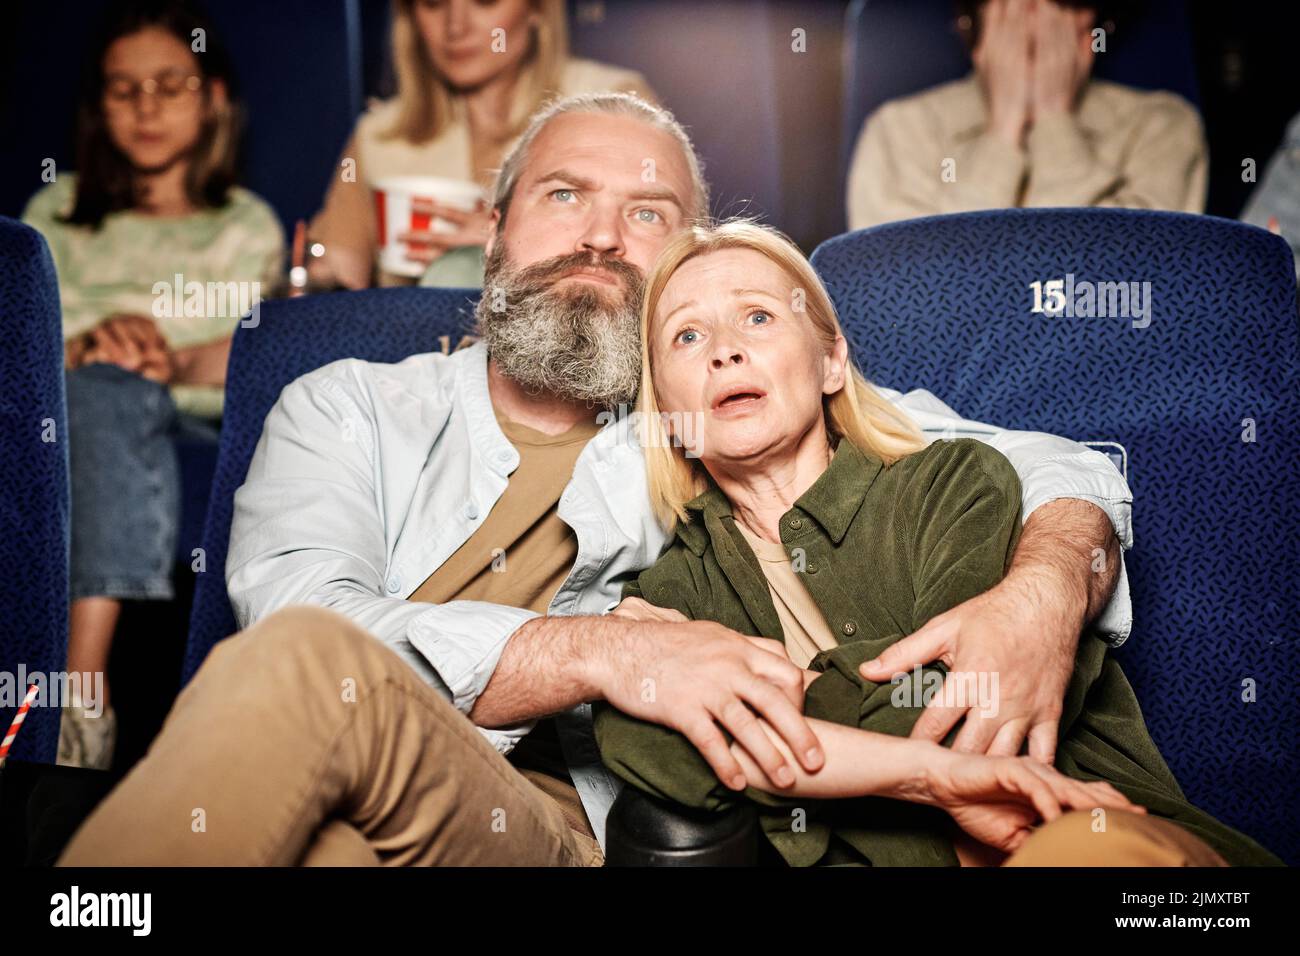 Retrato de un hombre caucásico adulto abrazando a su esposa viendo una película de tragedia juntos en el cine Foto de stock